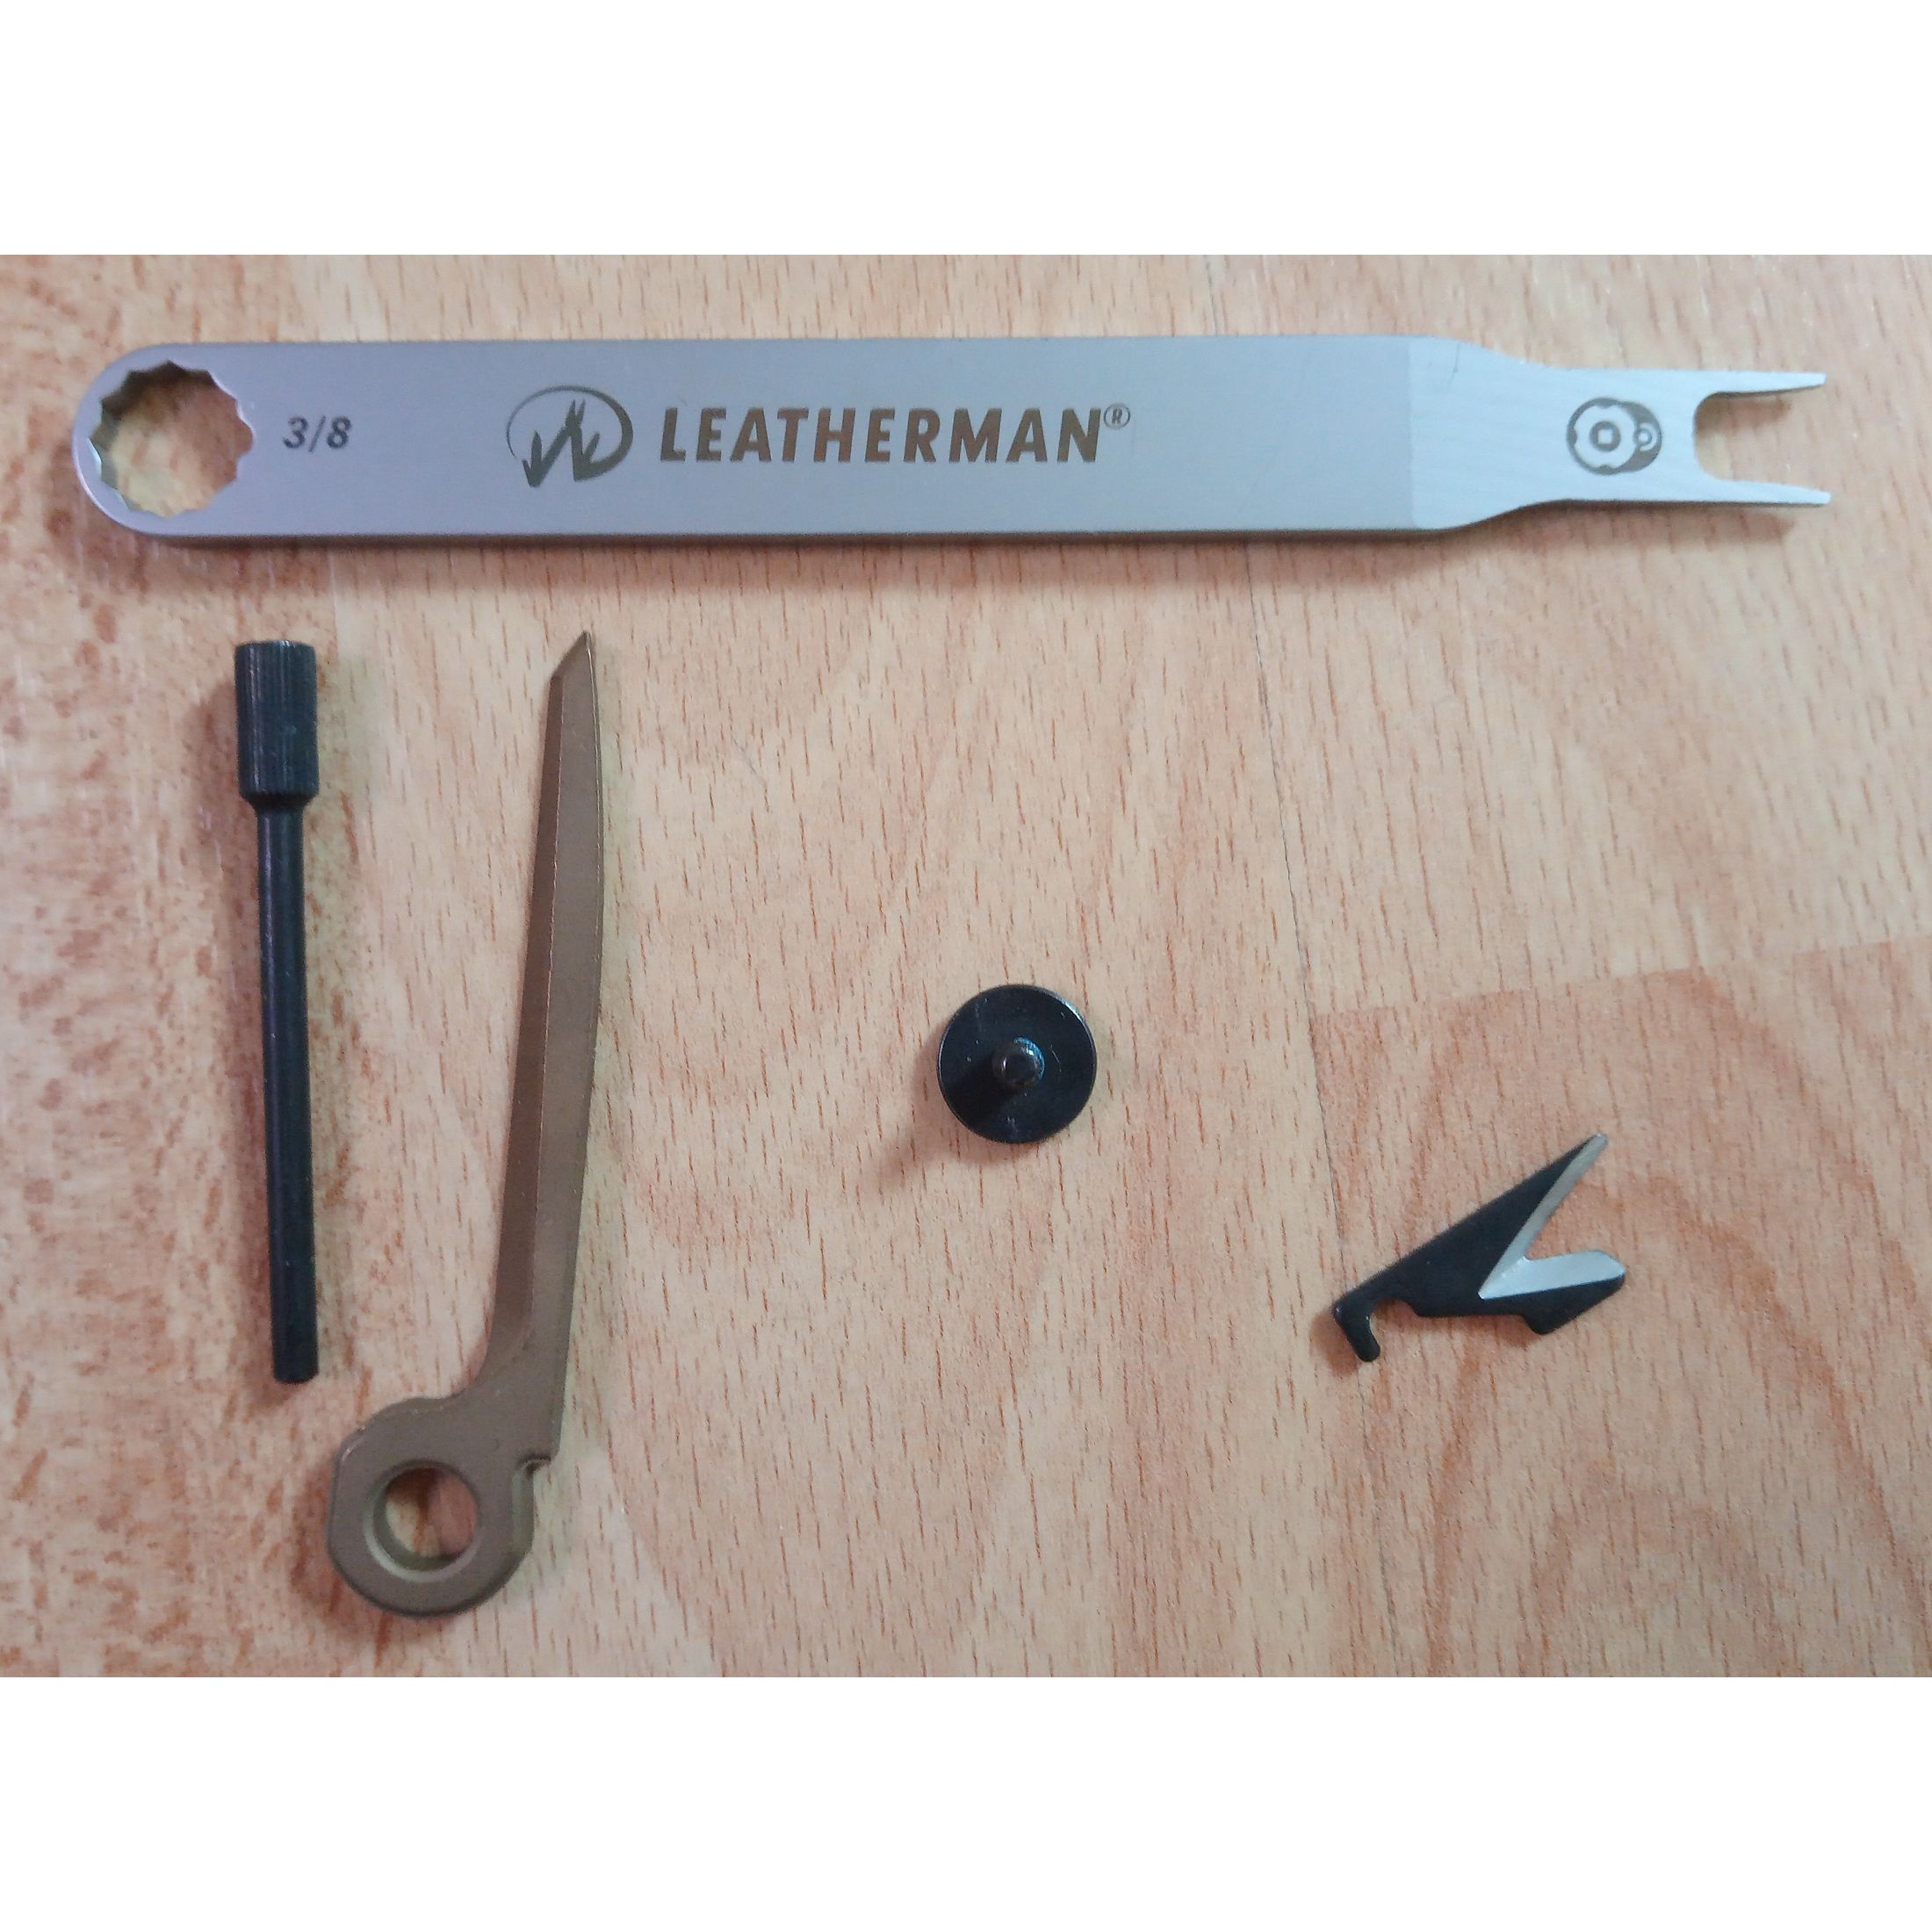 Leatherman MUT